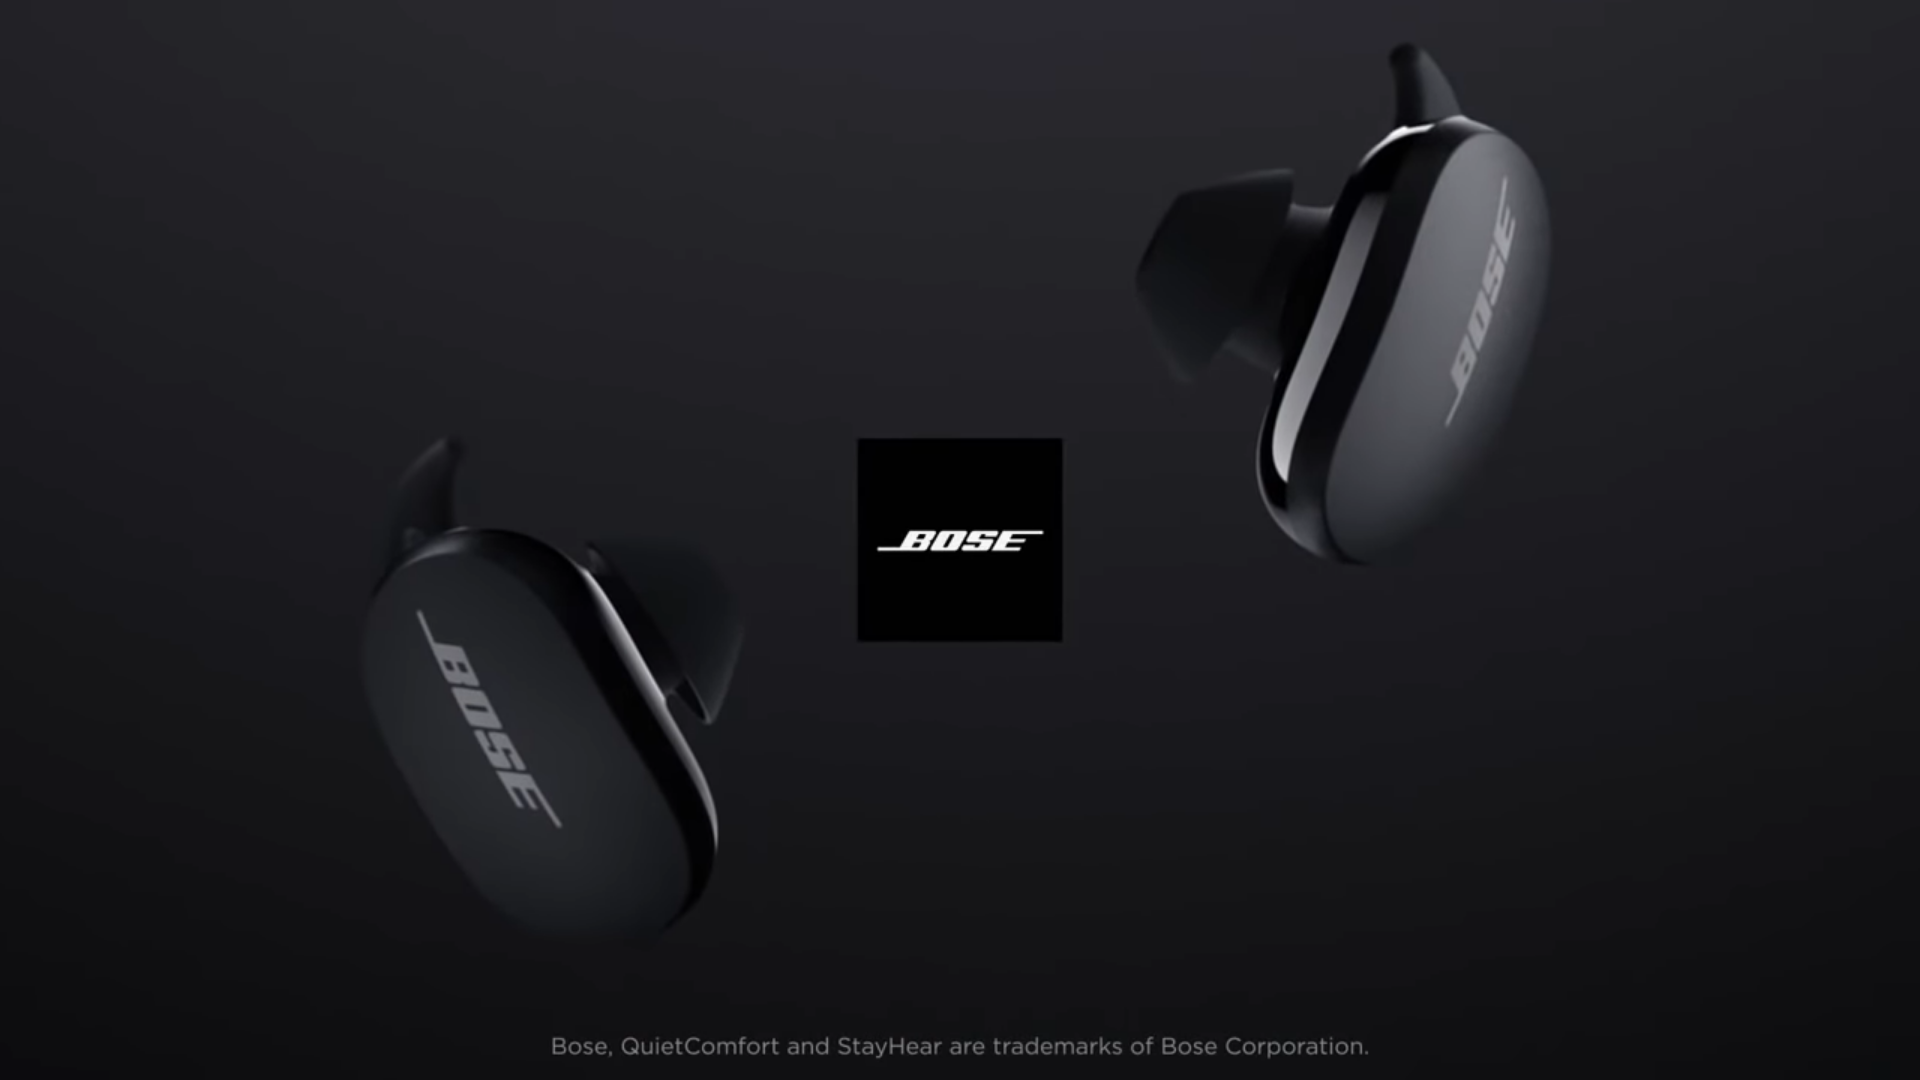 Bose vừa để lộ video tai nghe QuietComfort Earbuds mới